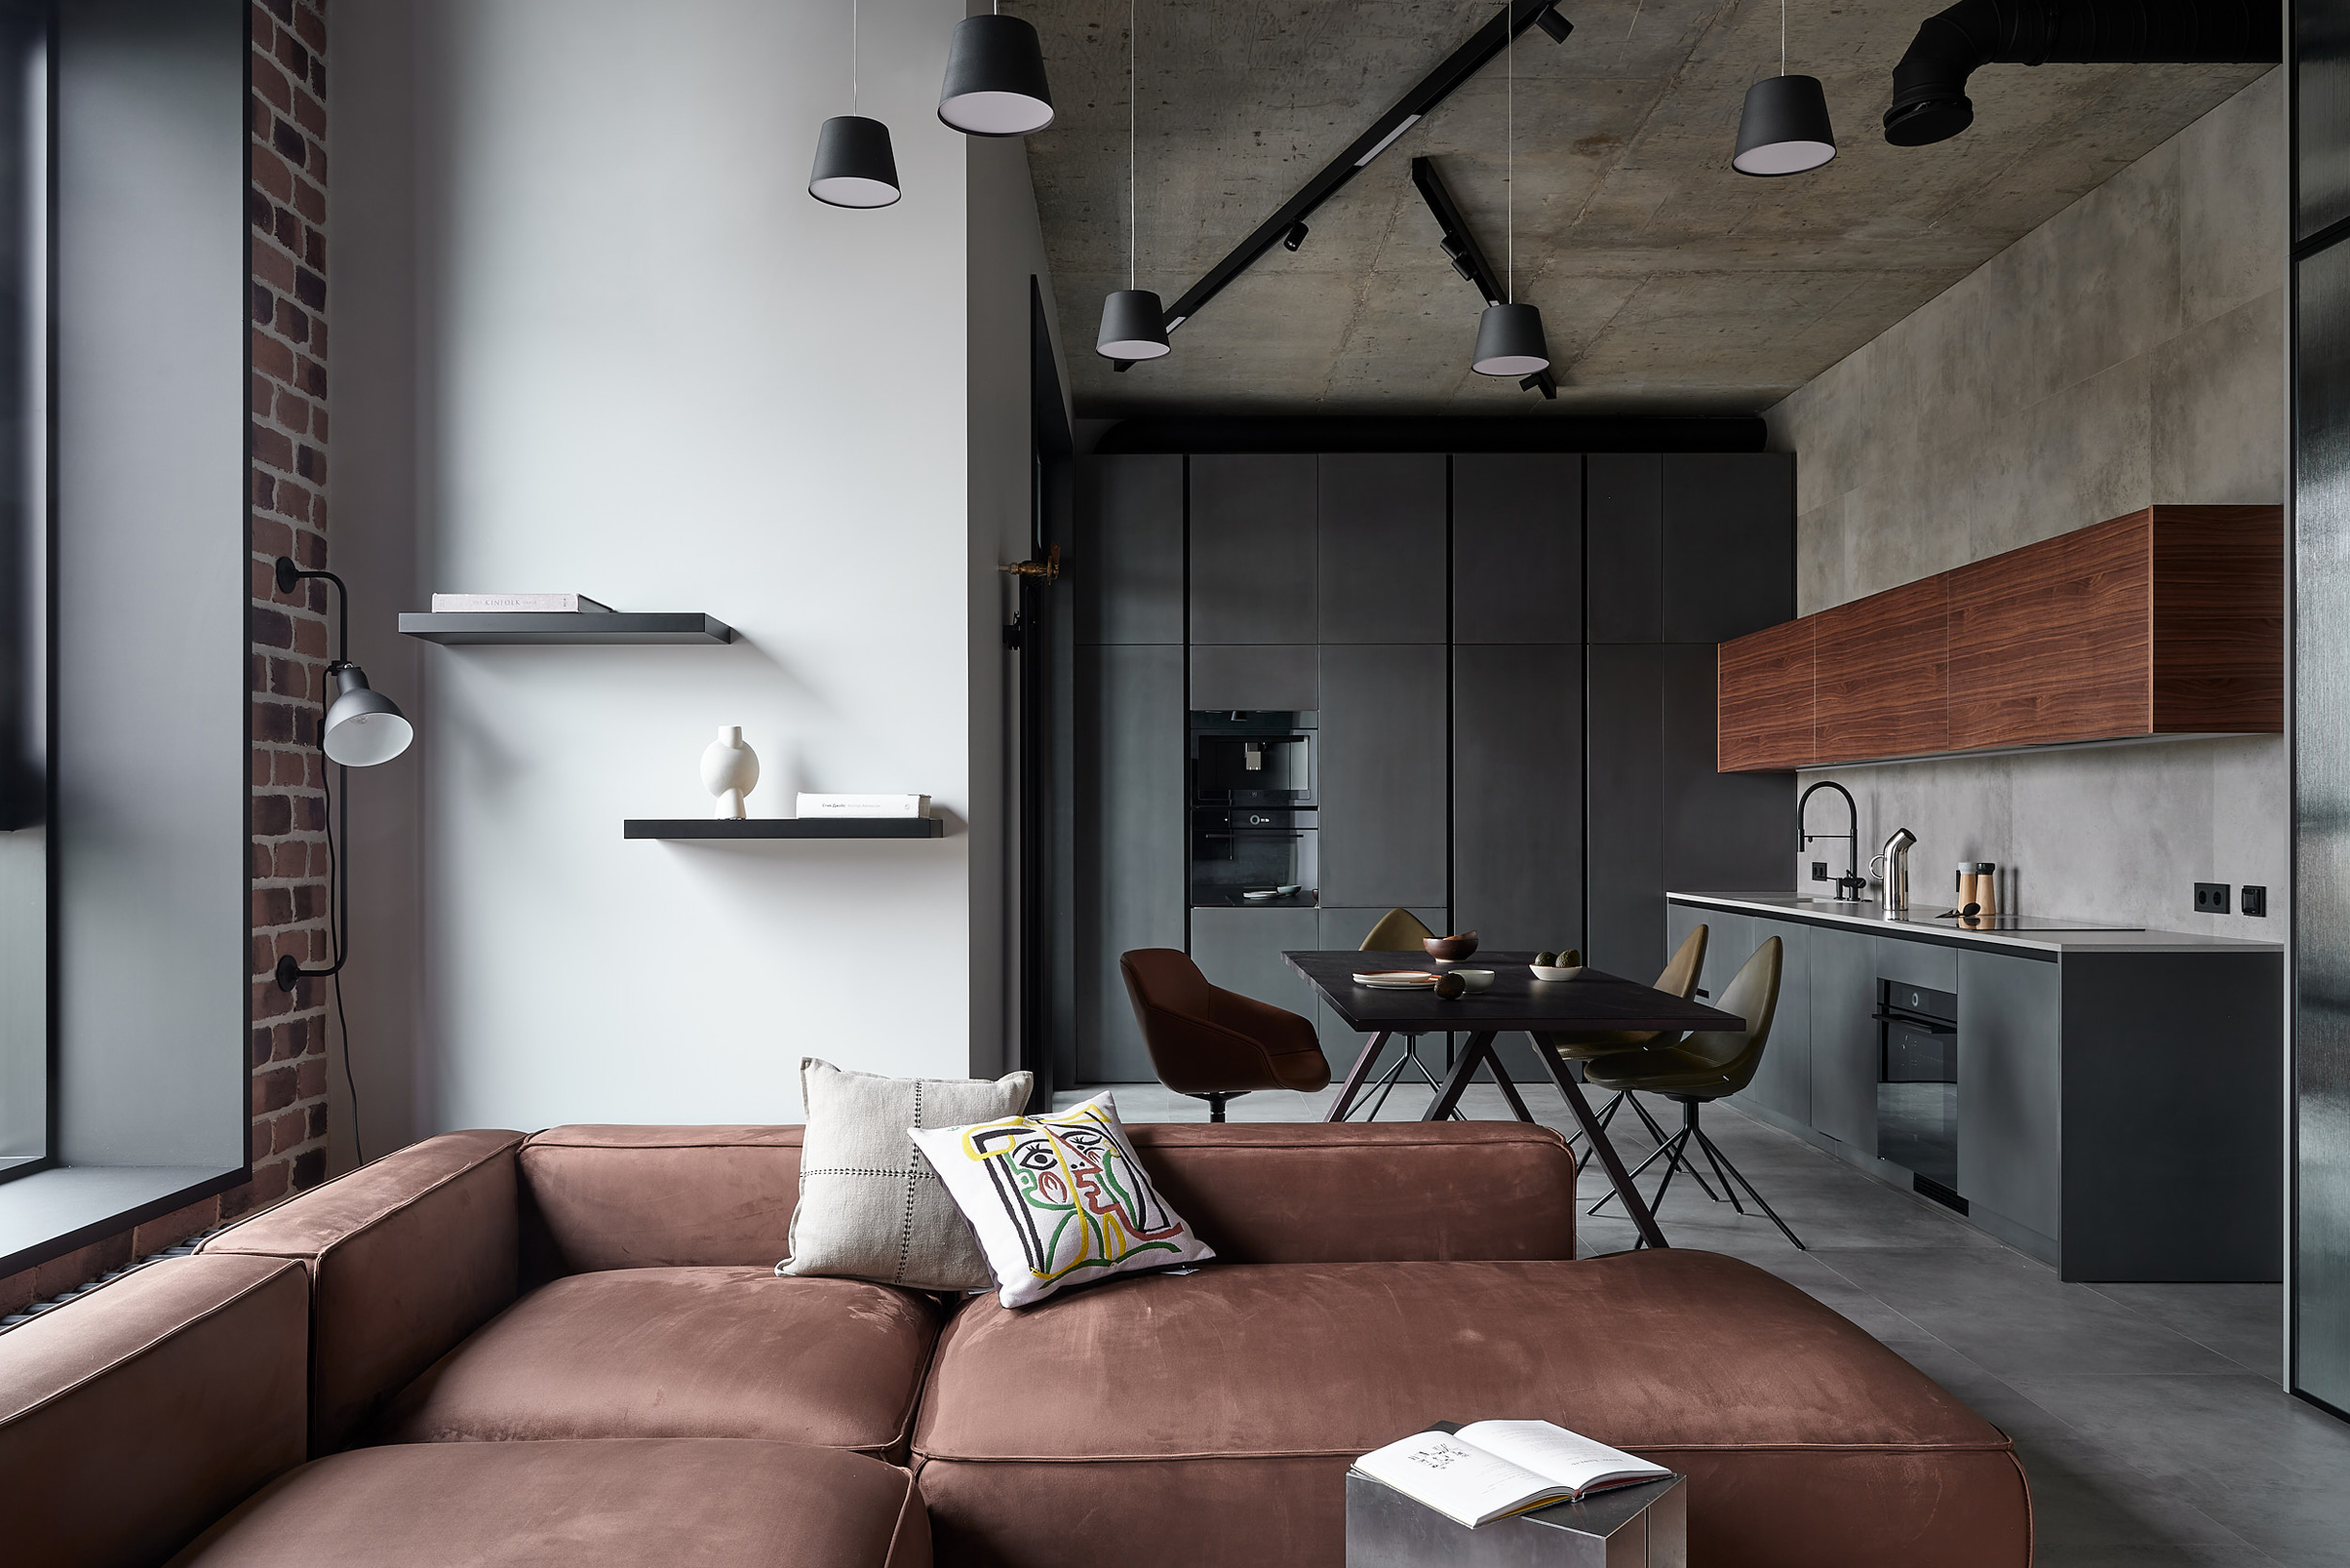 Дизайн интерьера квартиры в стиле лофт в квартире с потолками 320 см. Источник: atischler.ru